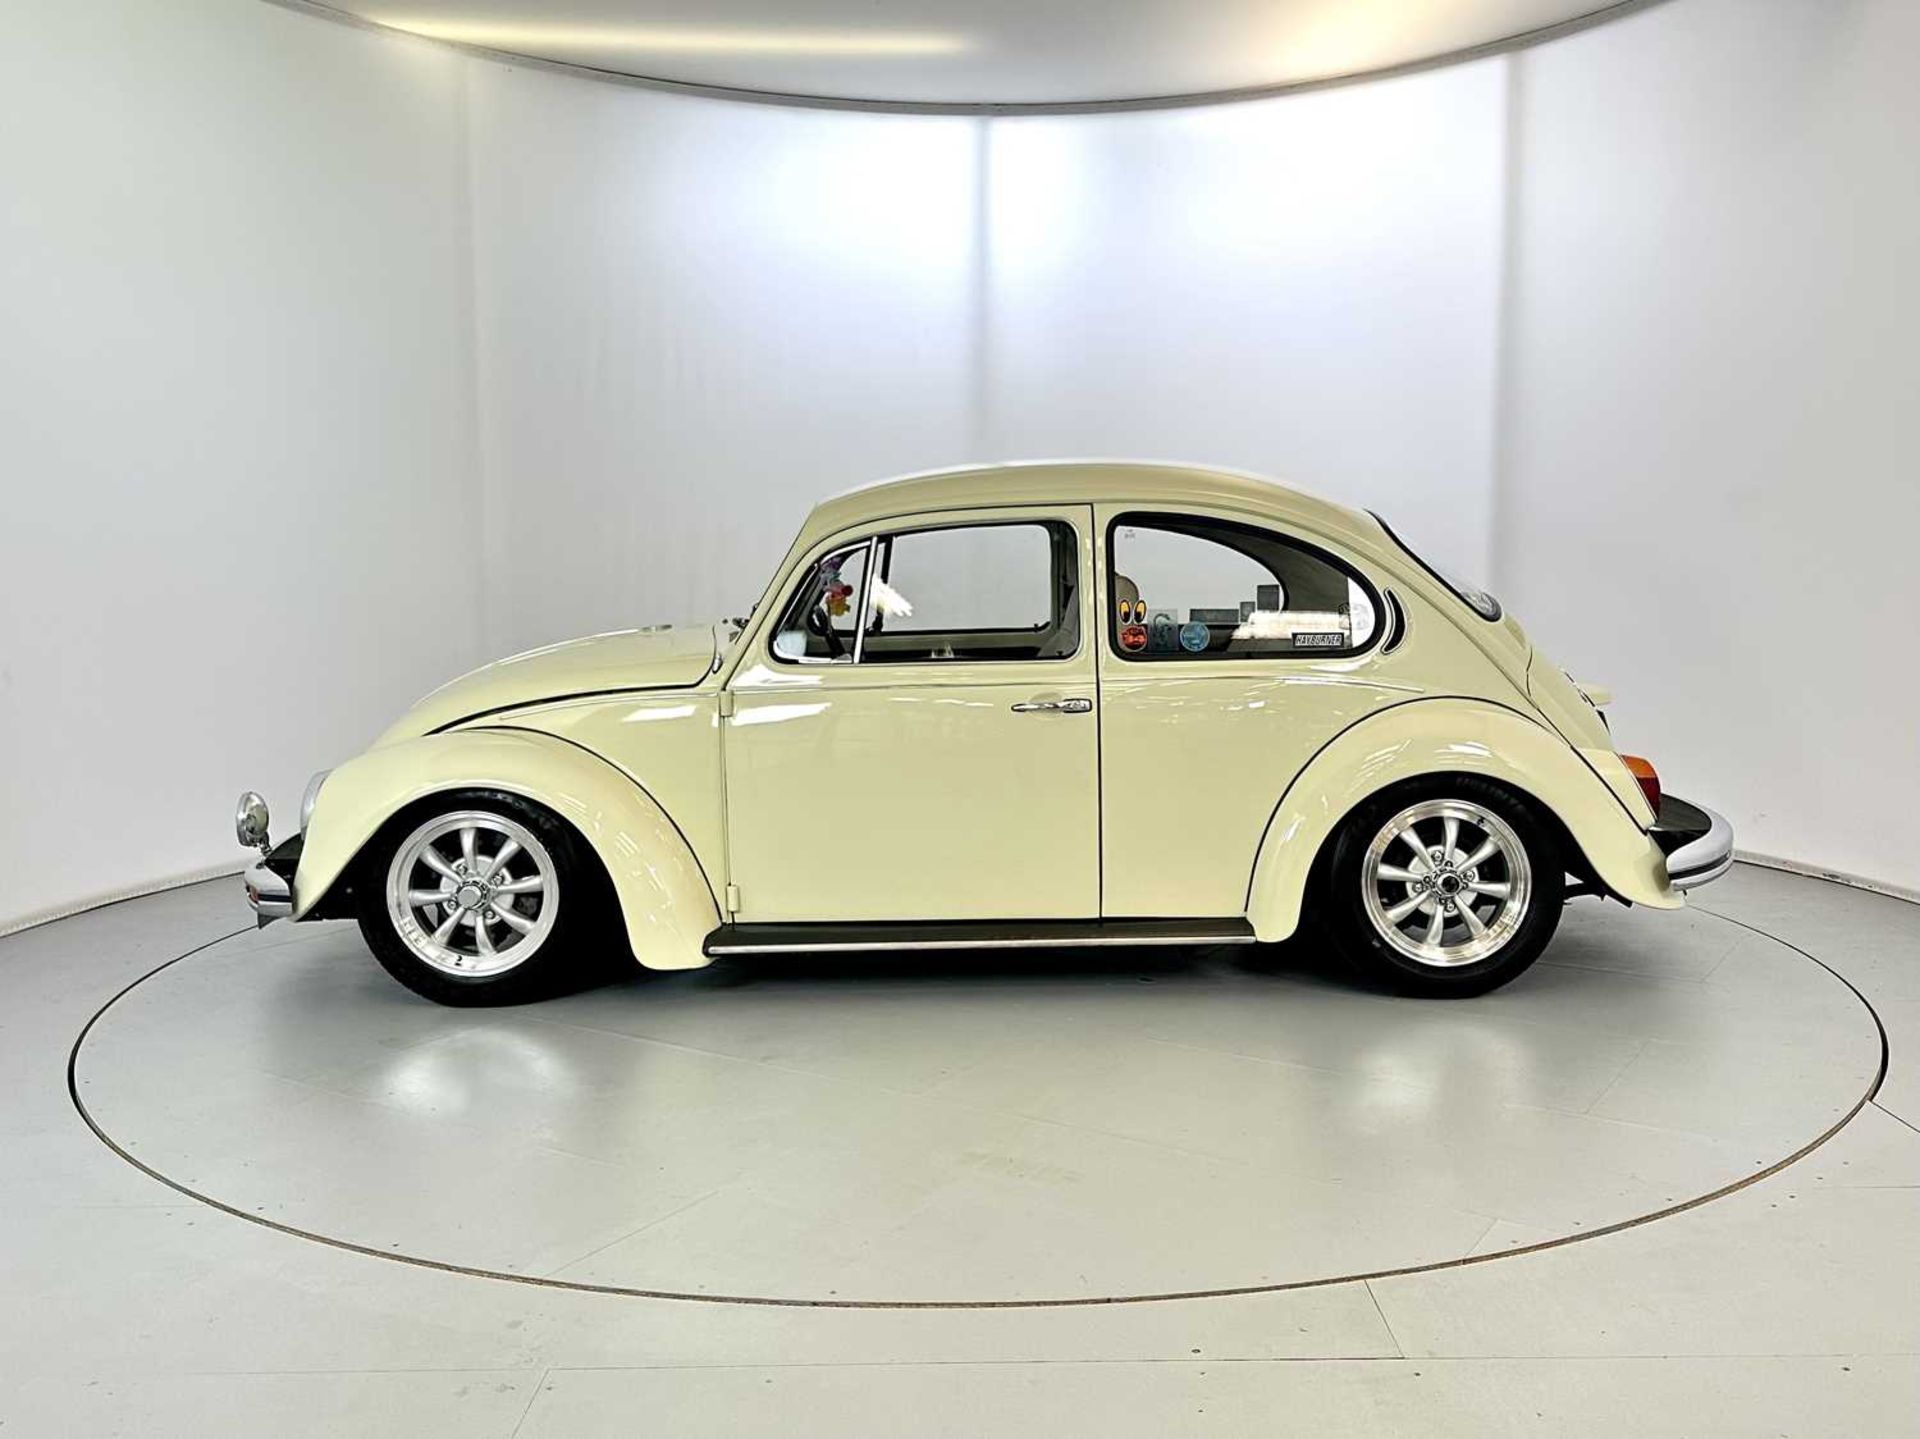 1971 Volkswagen Beetle - Image 5 of 30